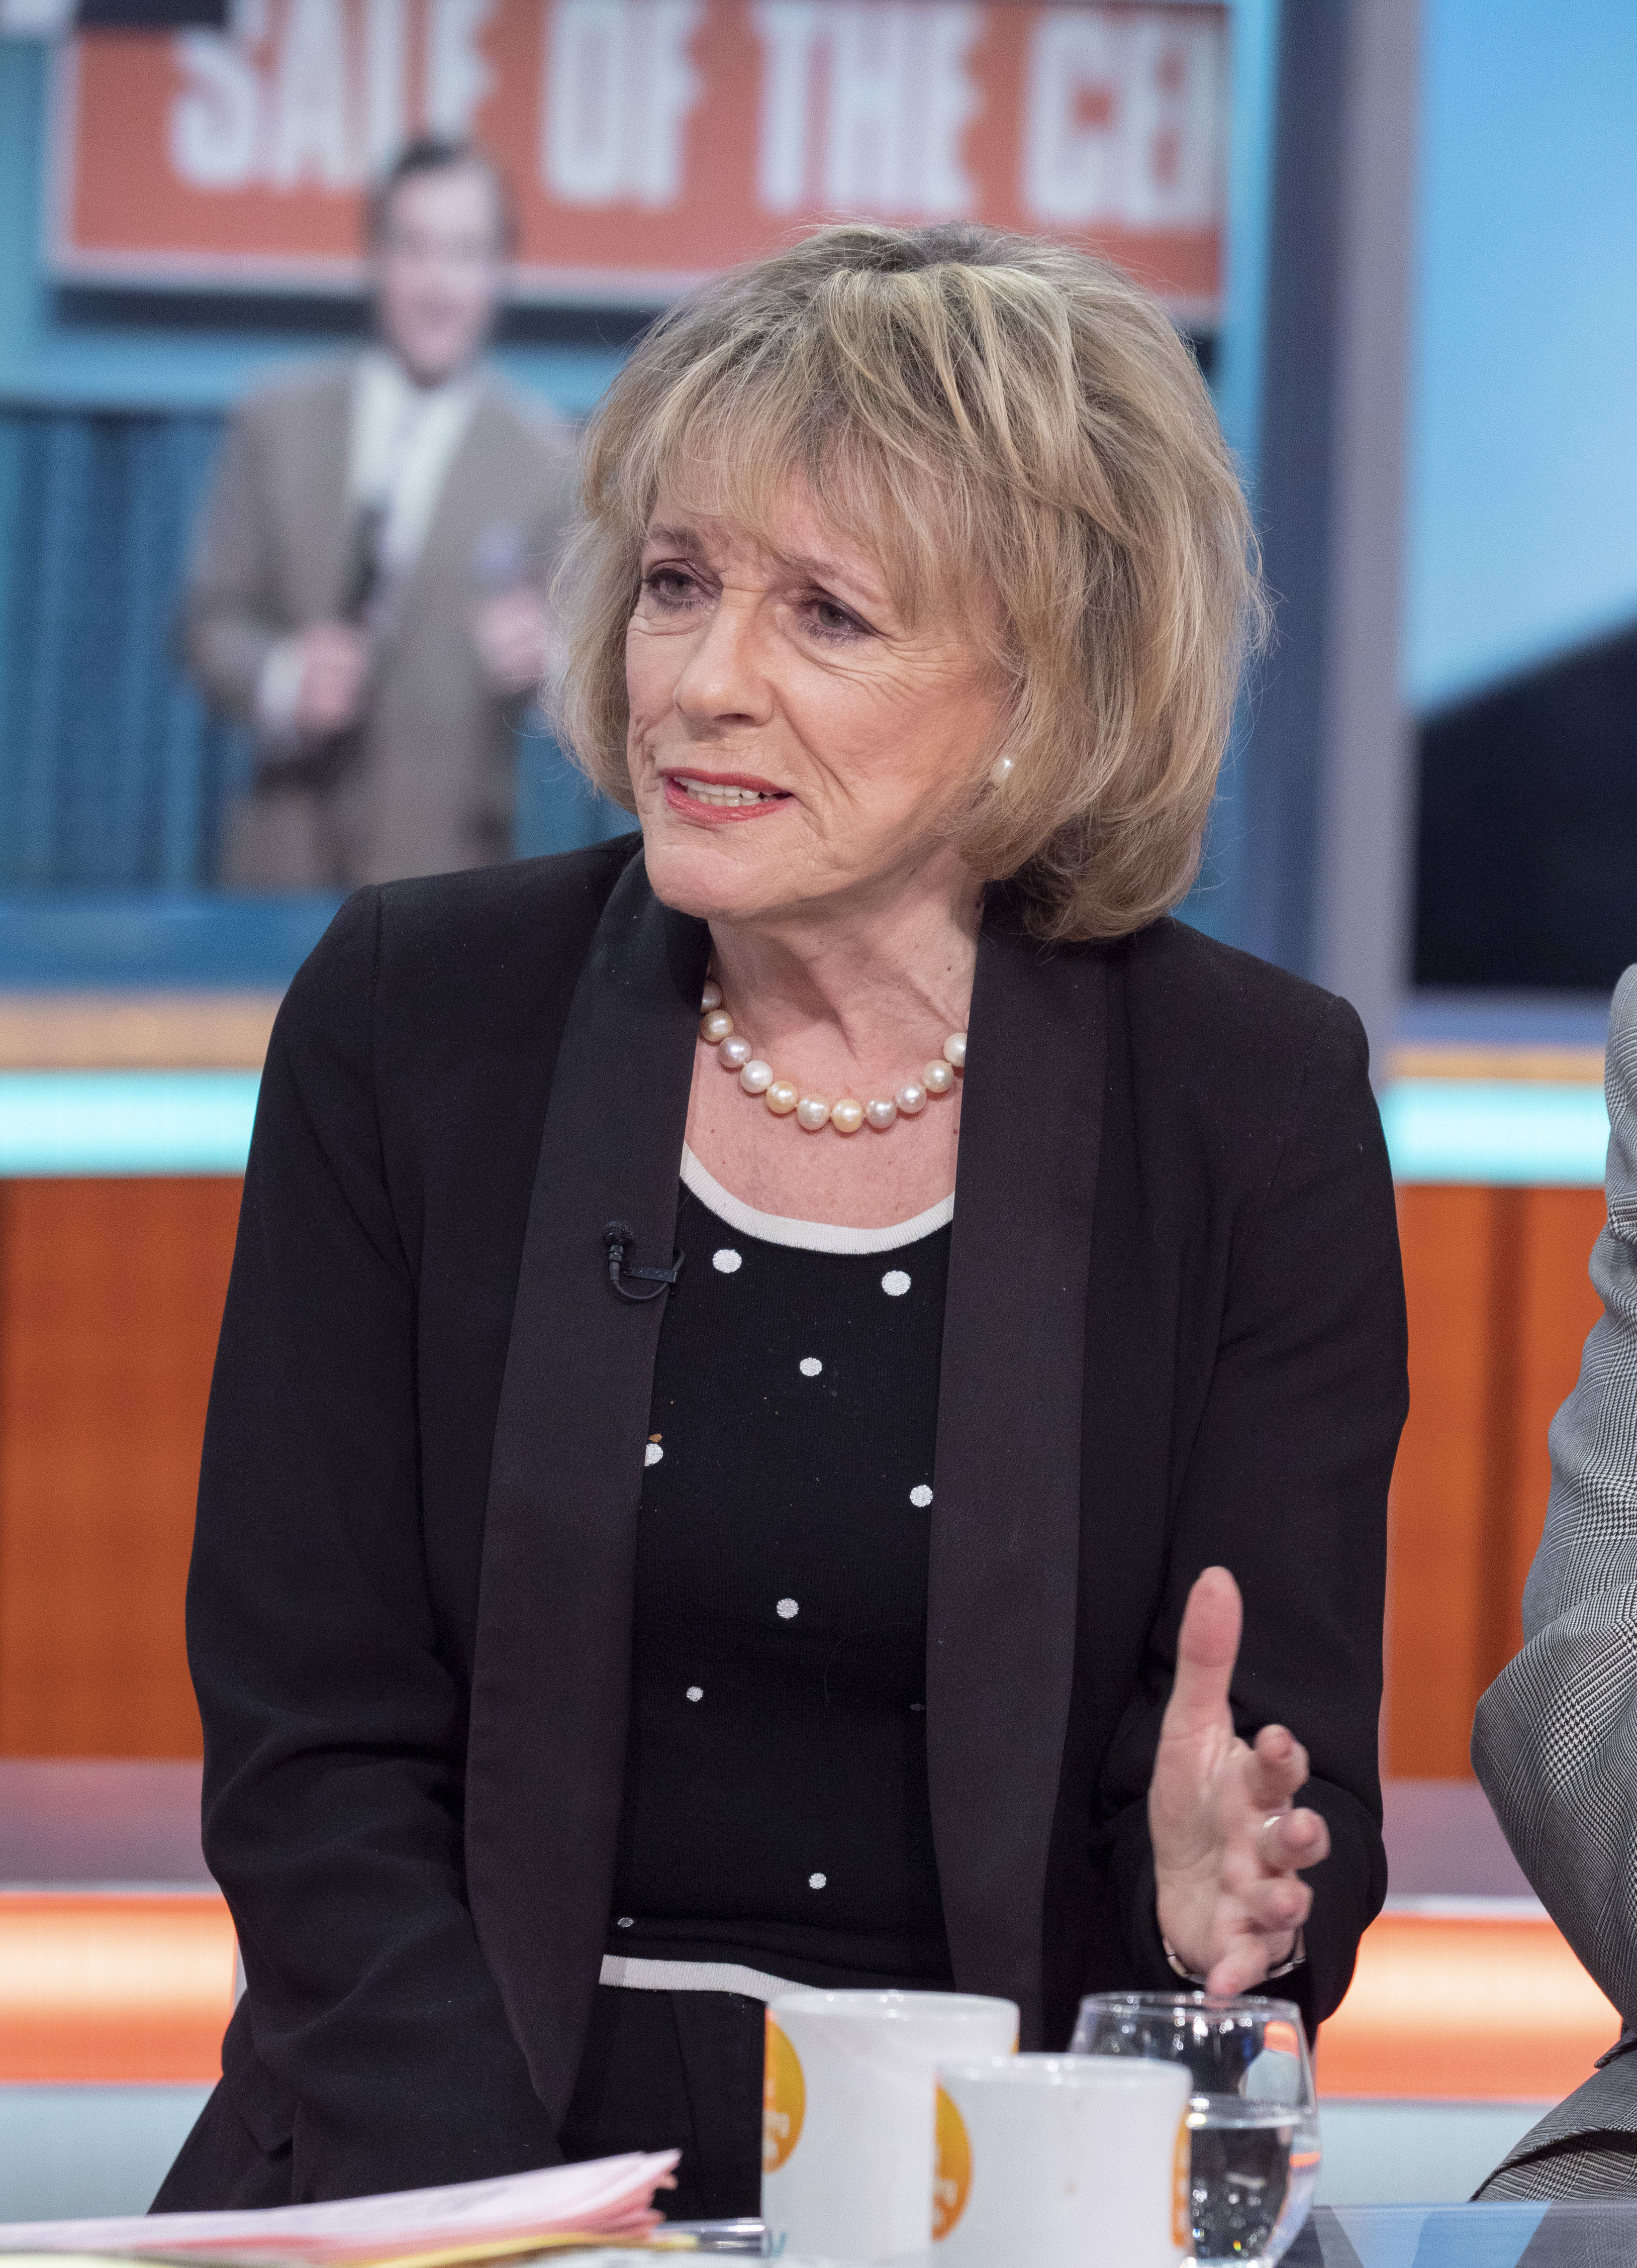 Der Labour-Chef hat der krebskranken TV-Legende Dame Esther Rantzen versprochen, eine Abstimmung über Sterbehilfe zuzulassen, falls Labour die bevorstehende Wahl gewinnt